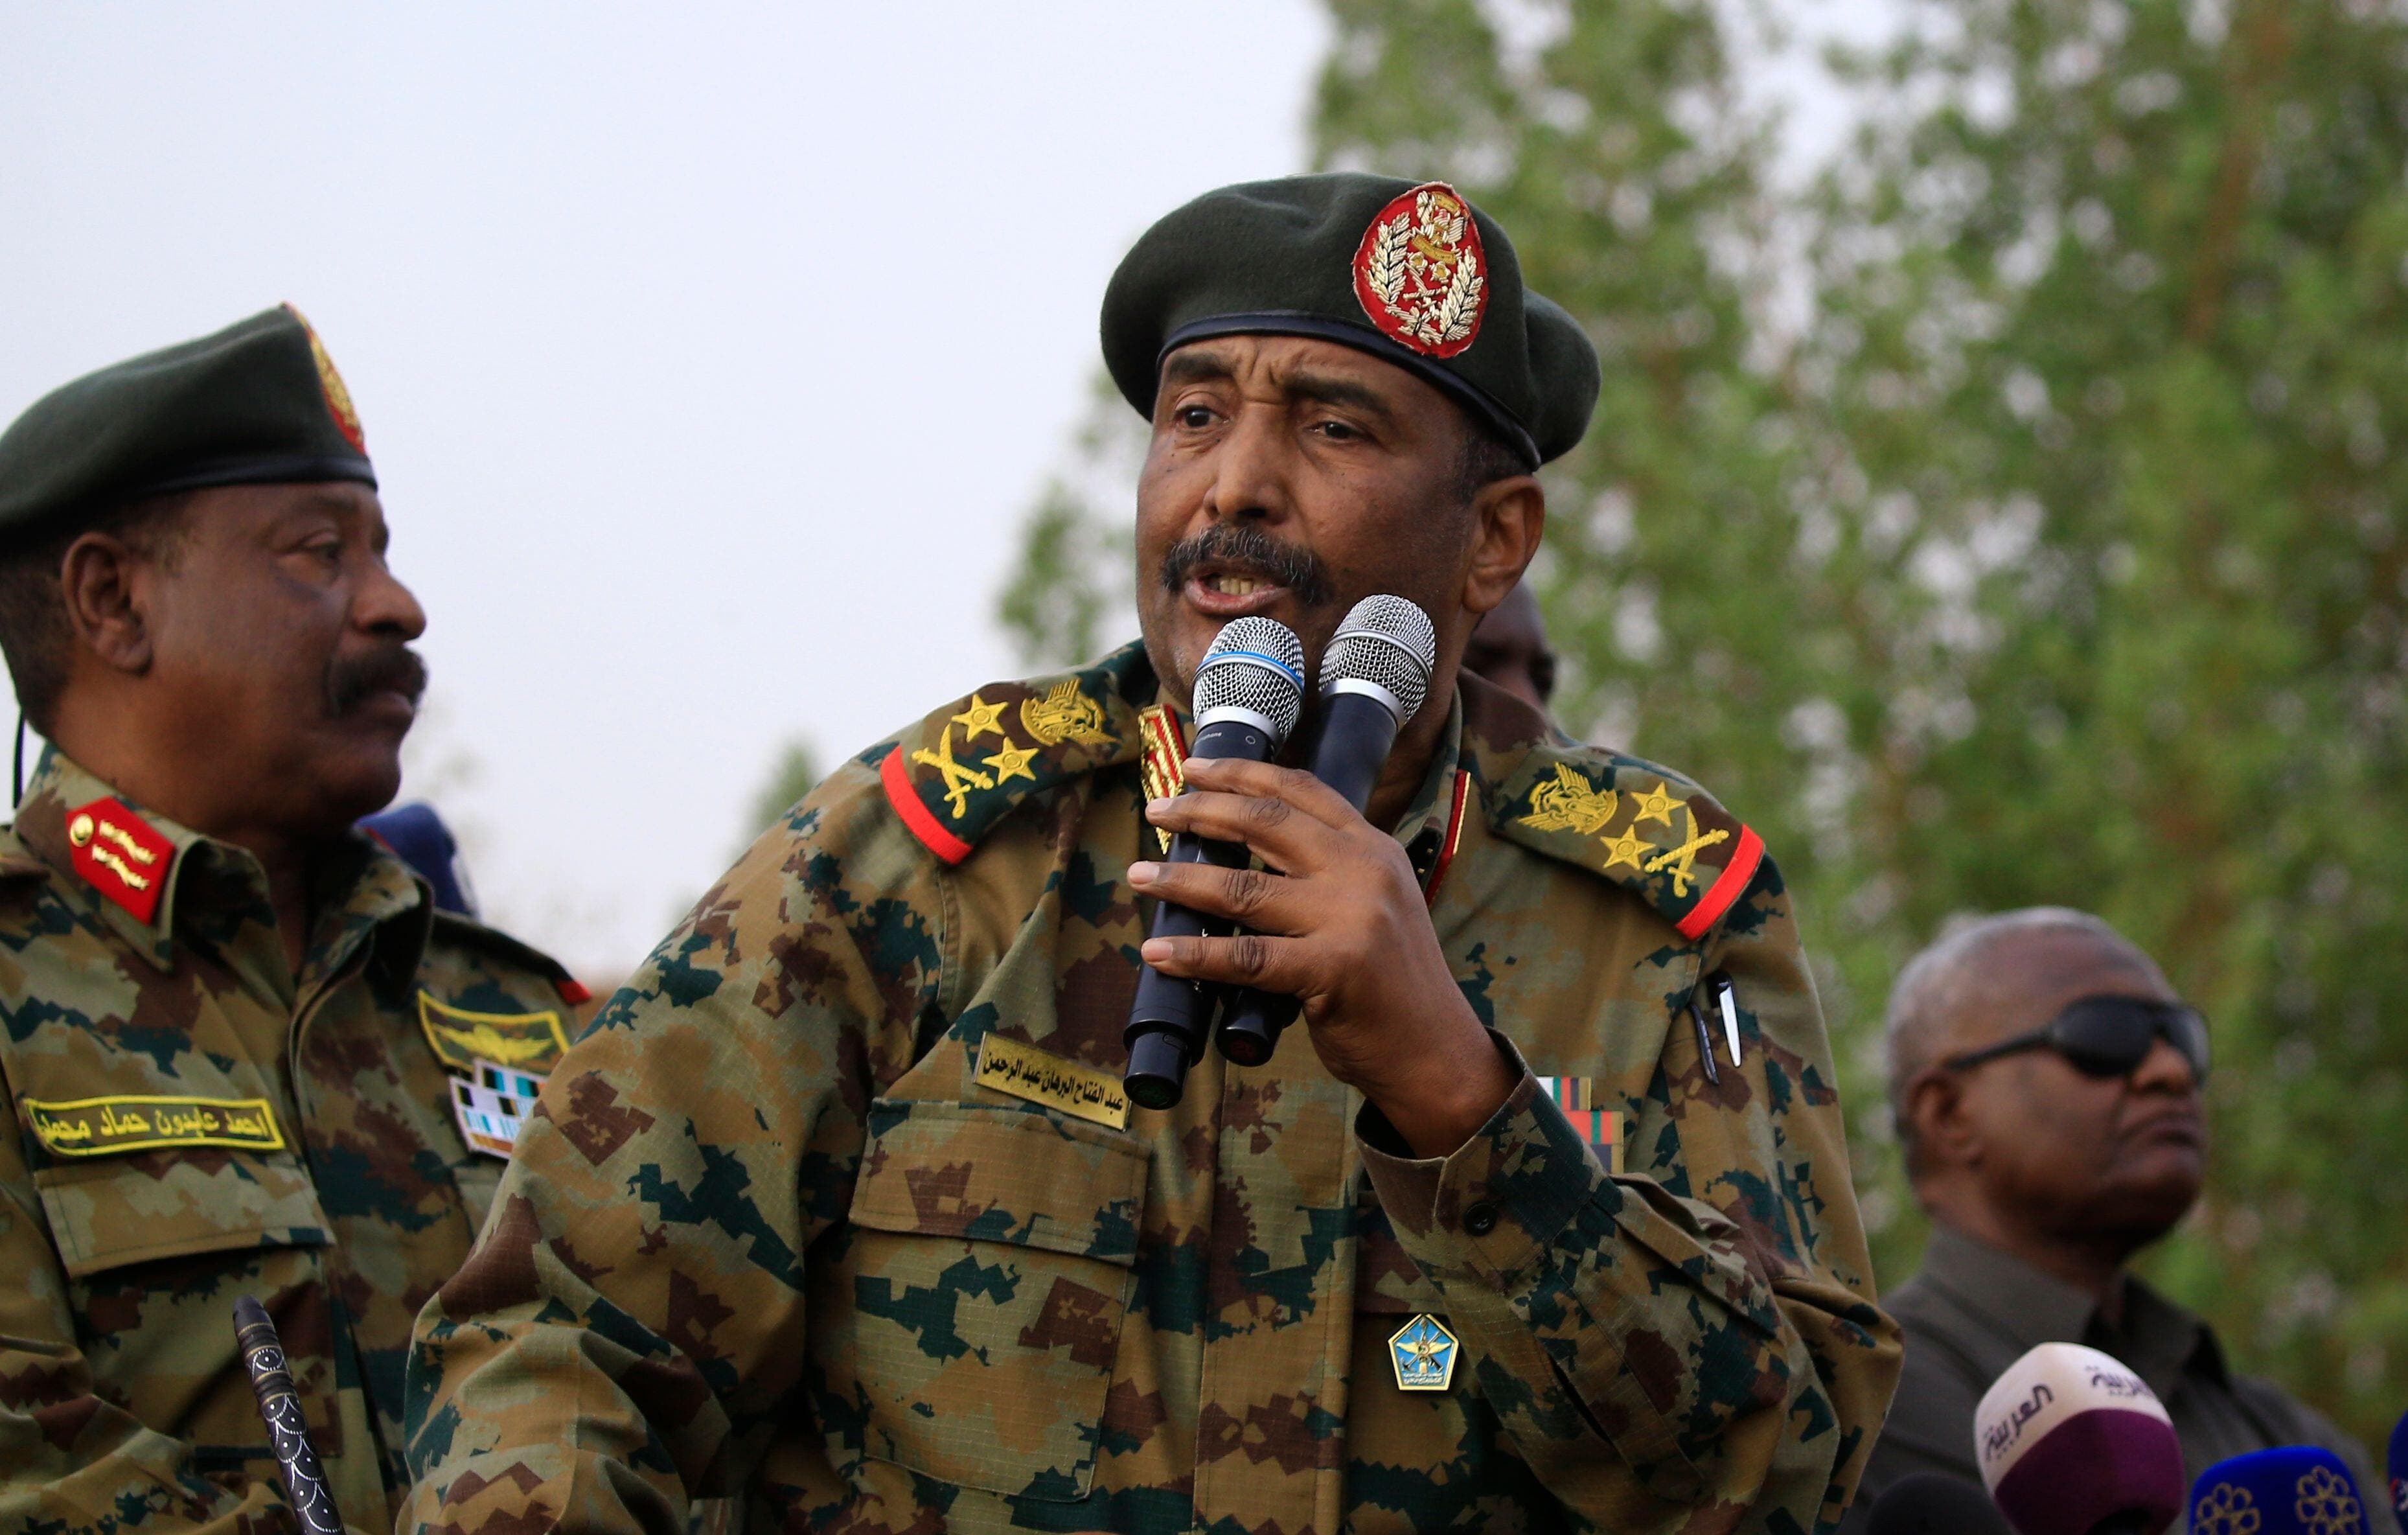 البرهان يصدر مرسوما دستوريا لإنشاء حكم فدرالي في السودان